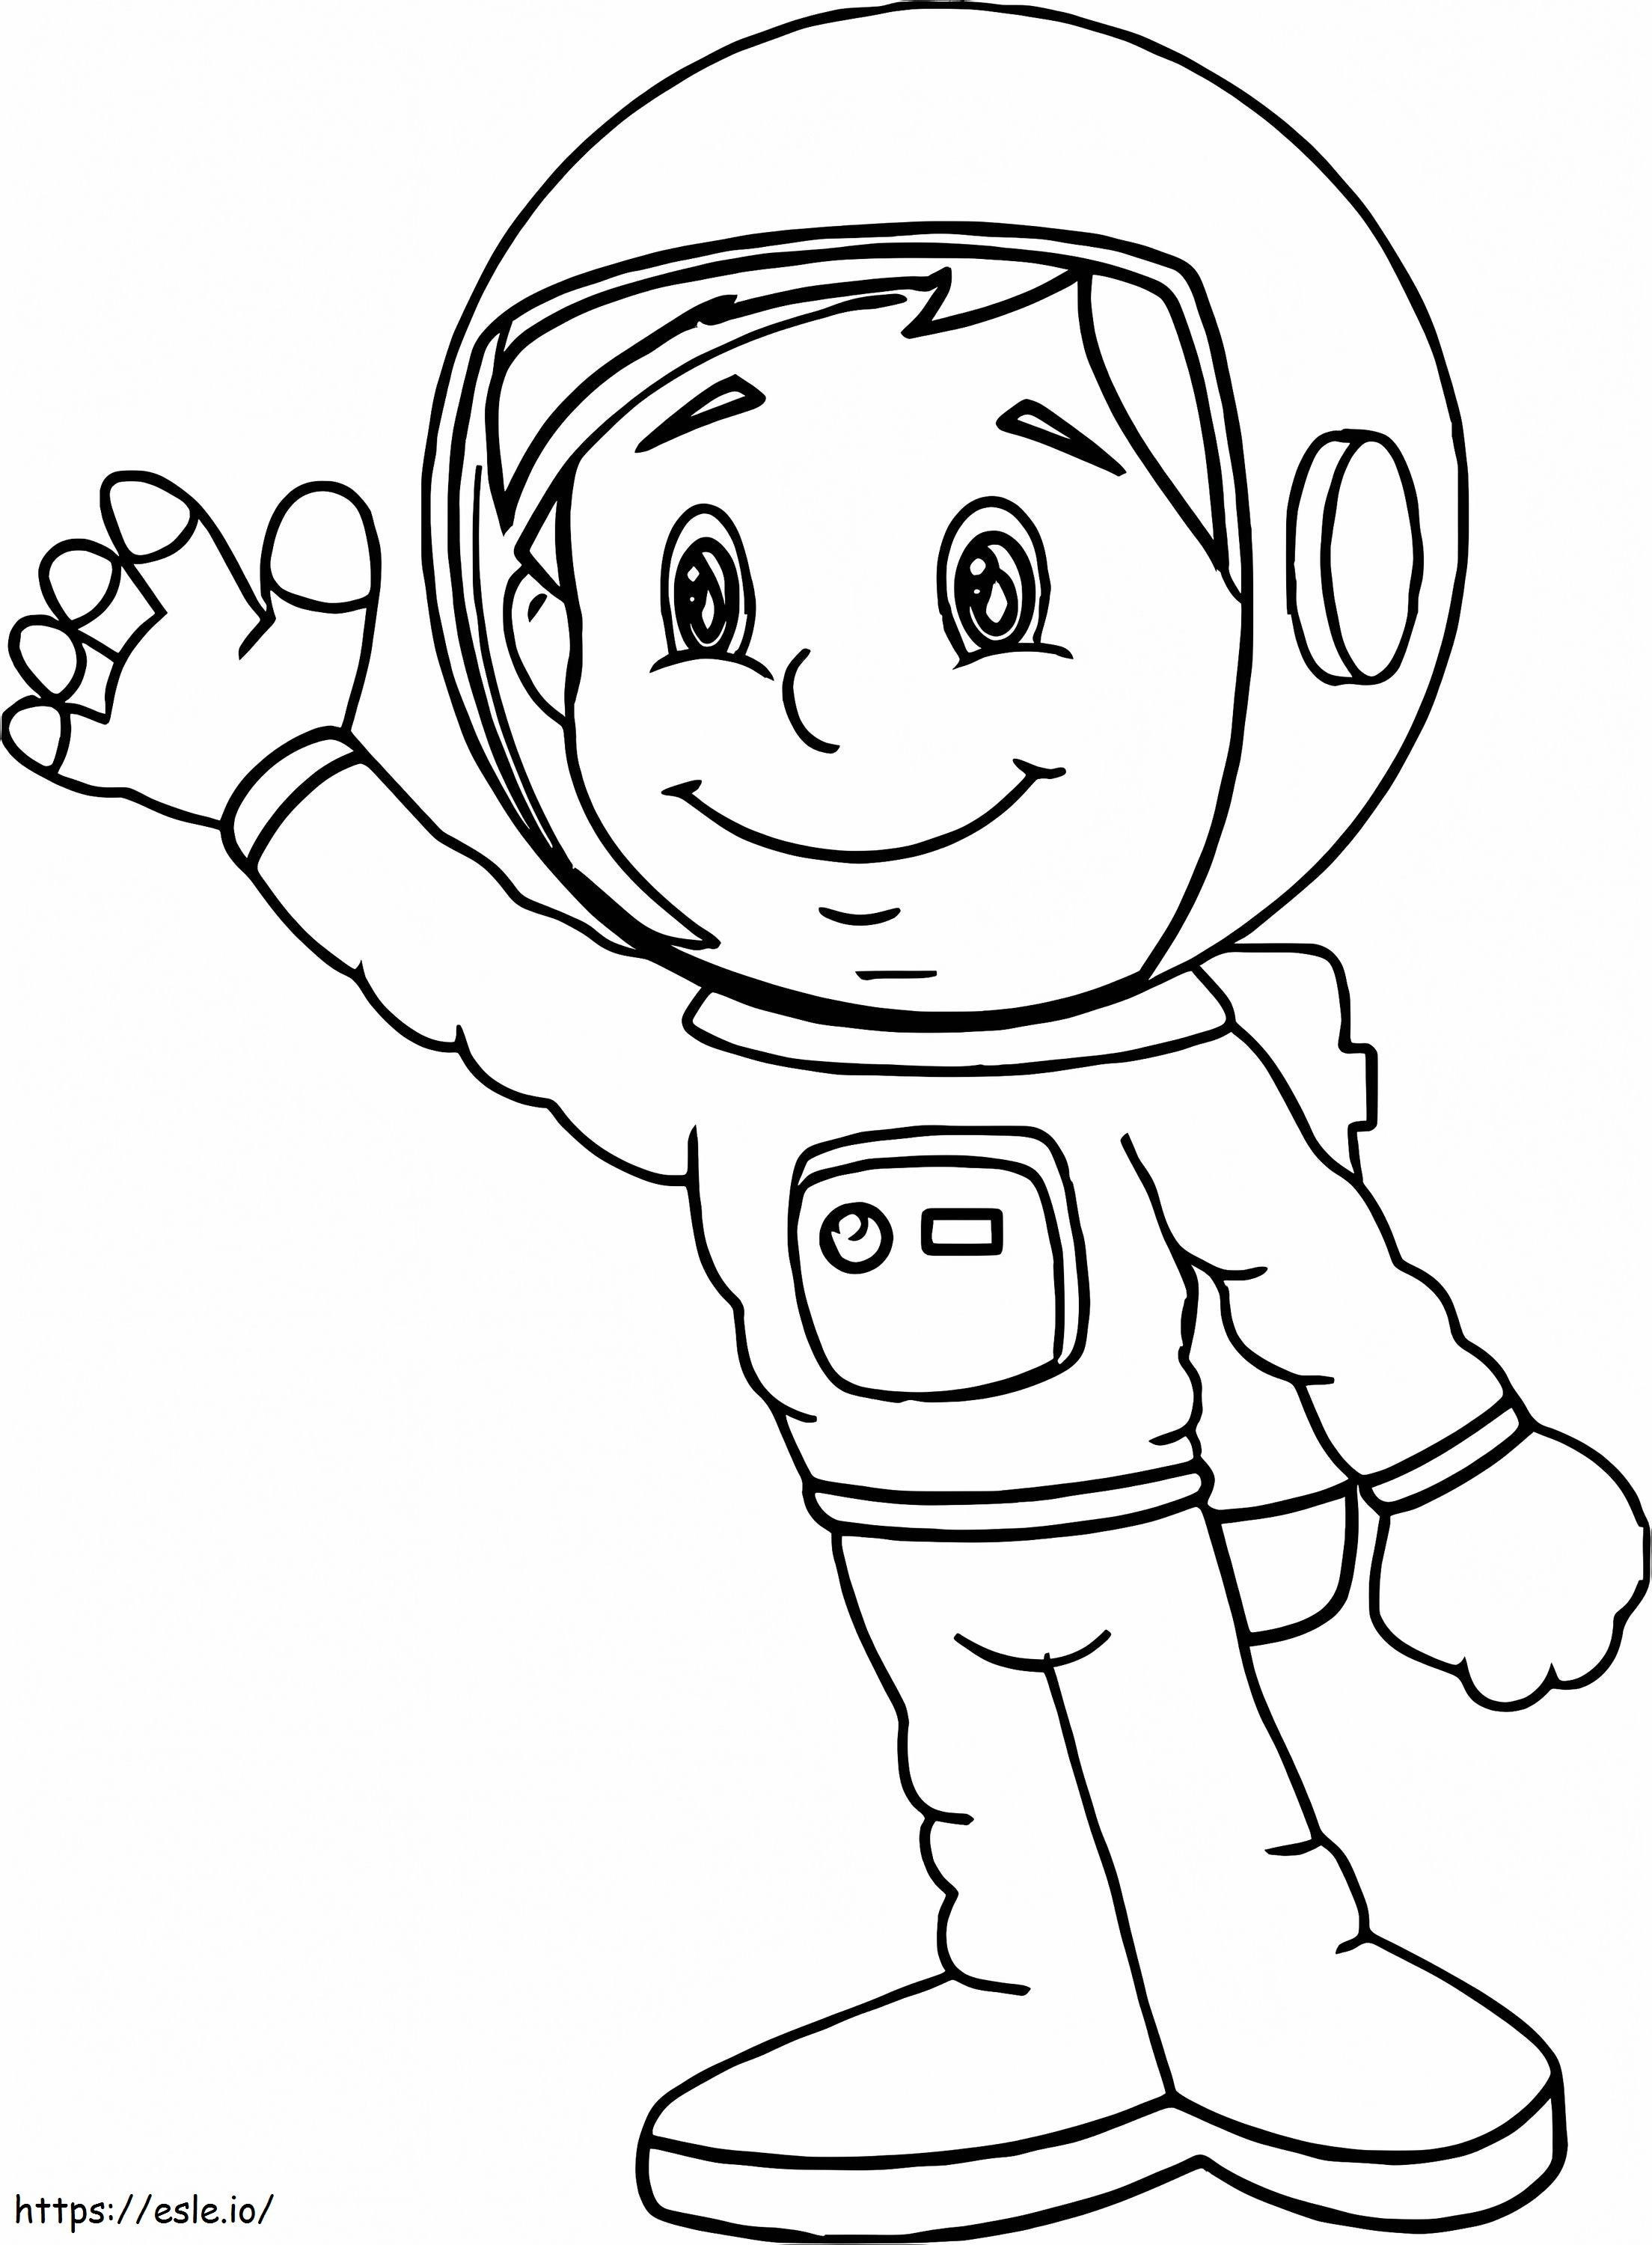 Micul astronaut de colorat